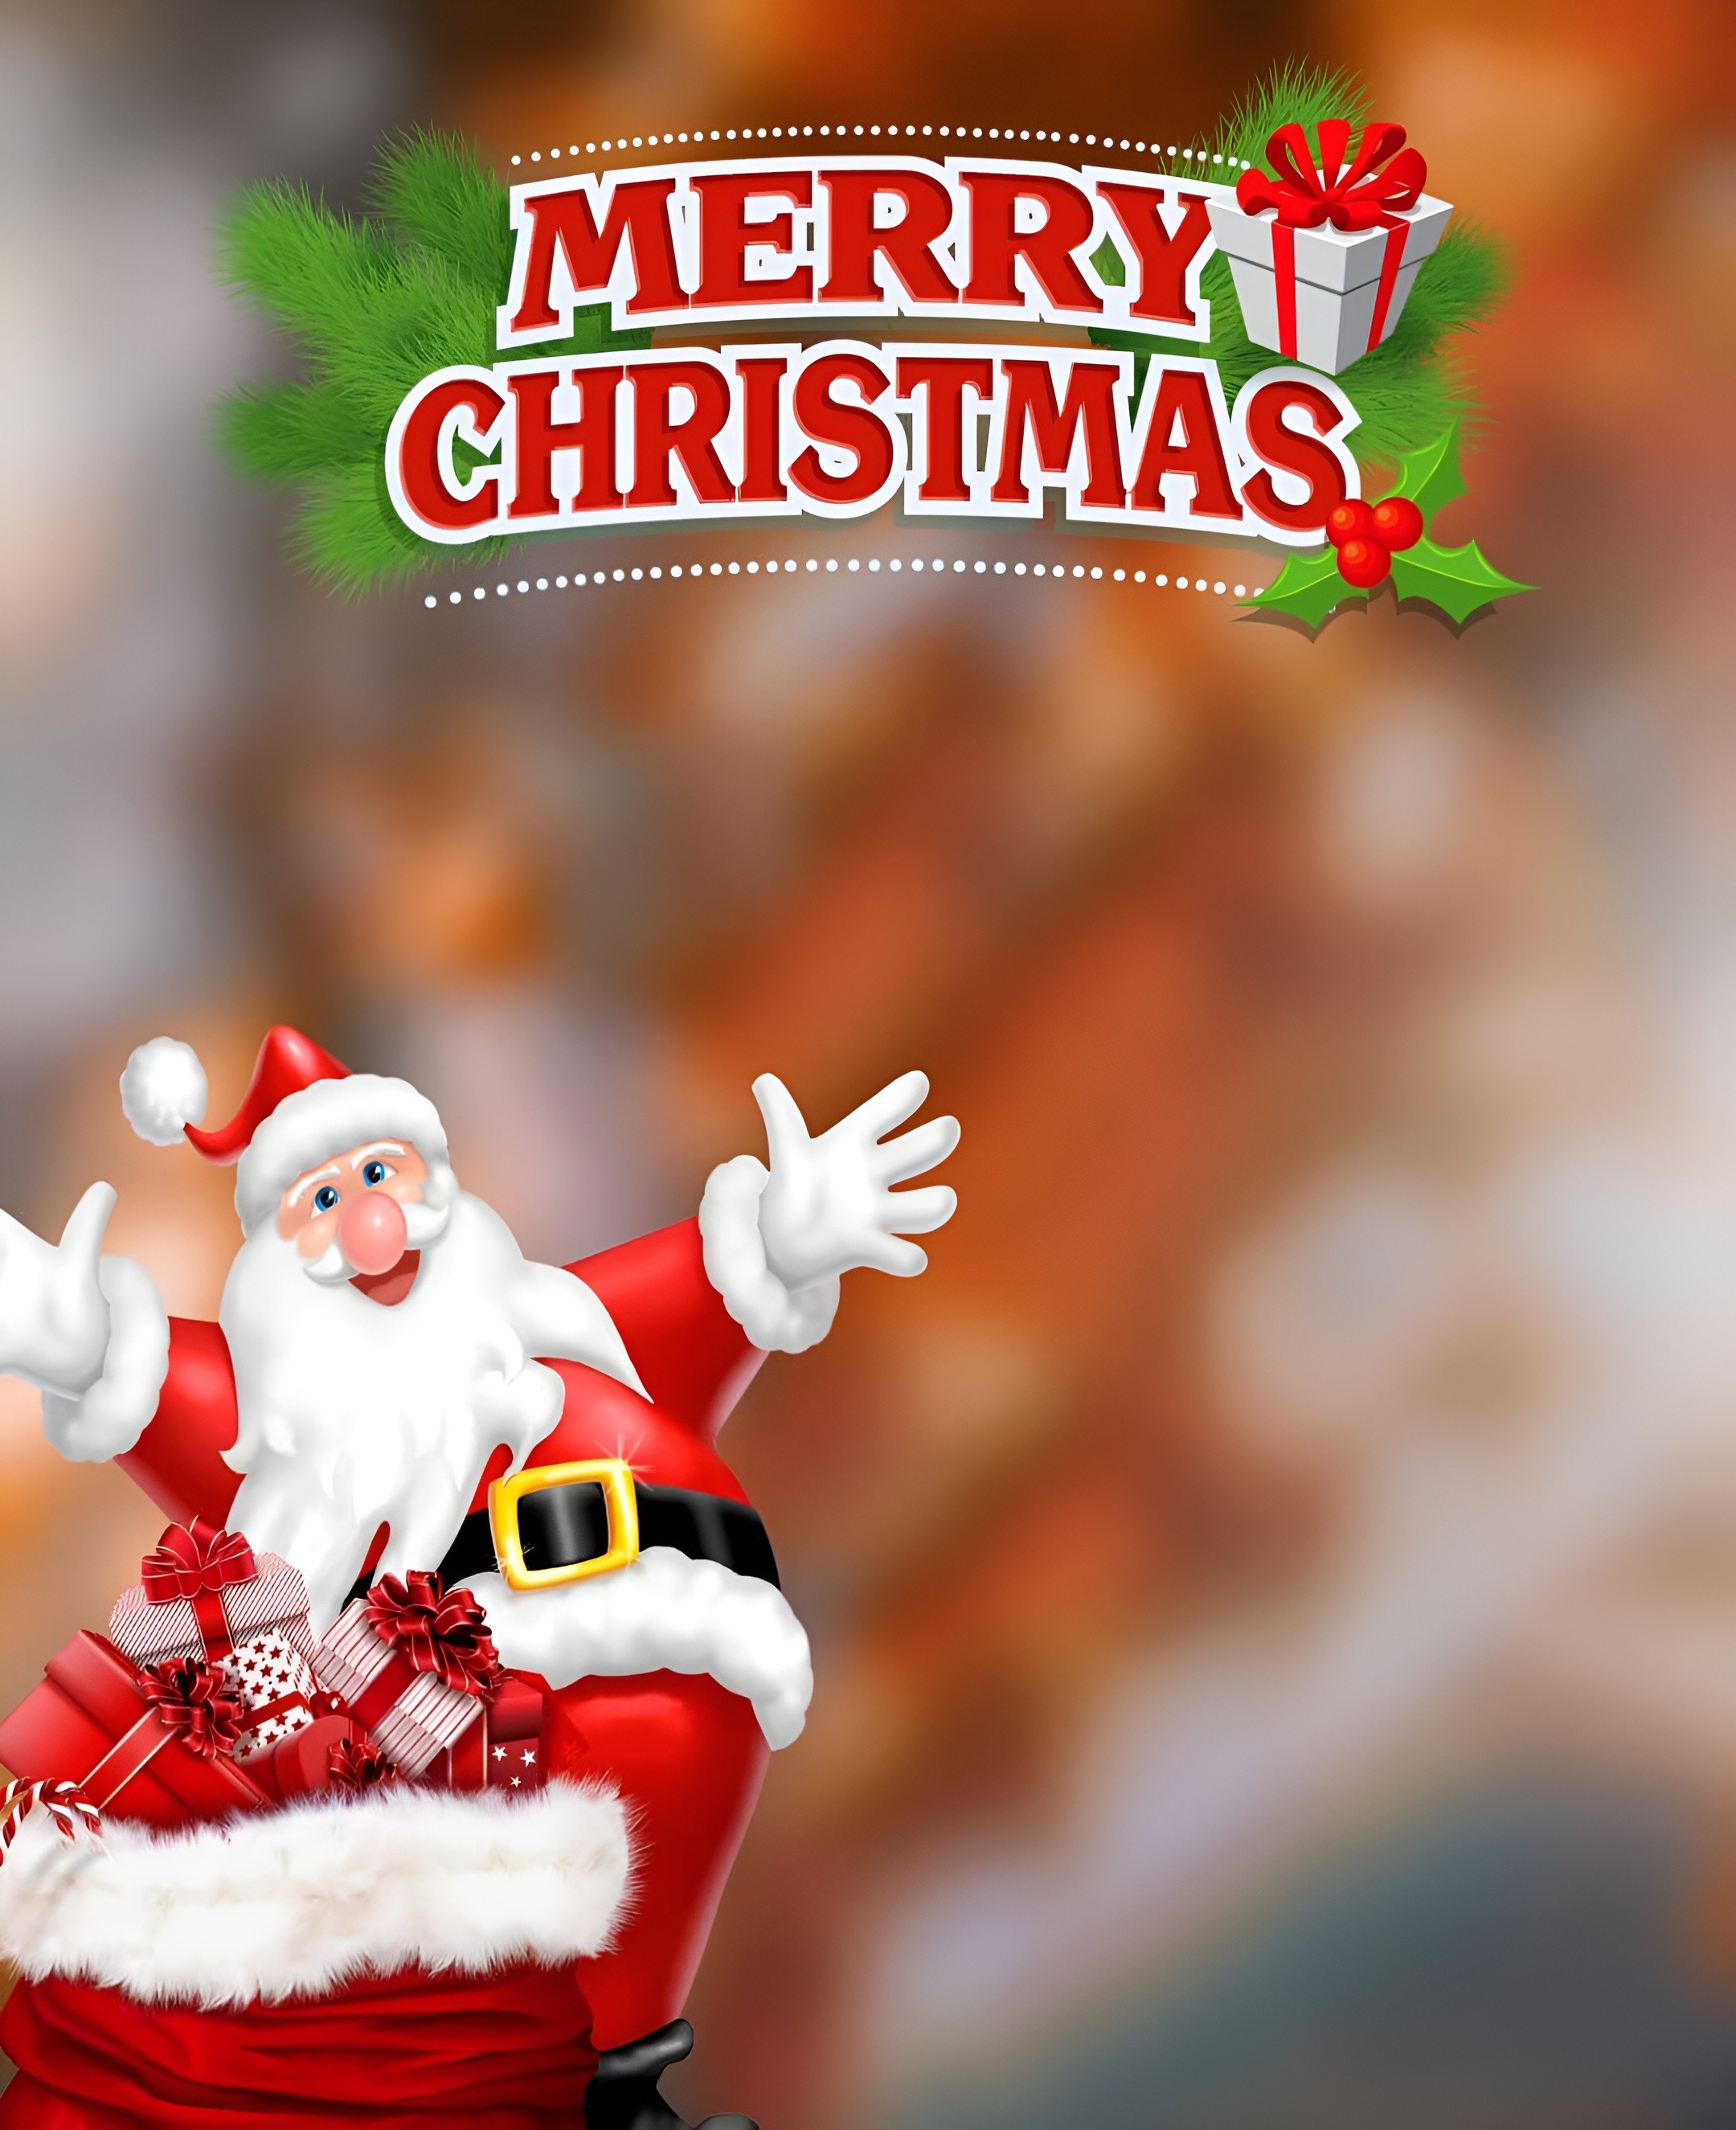 Free Christmas Background Image New 